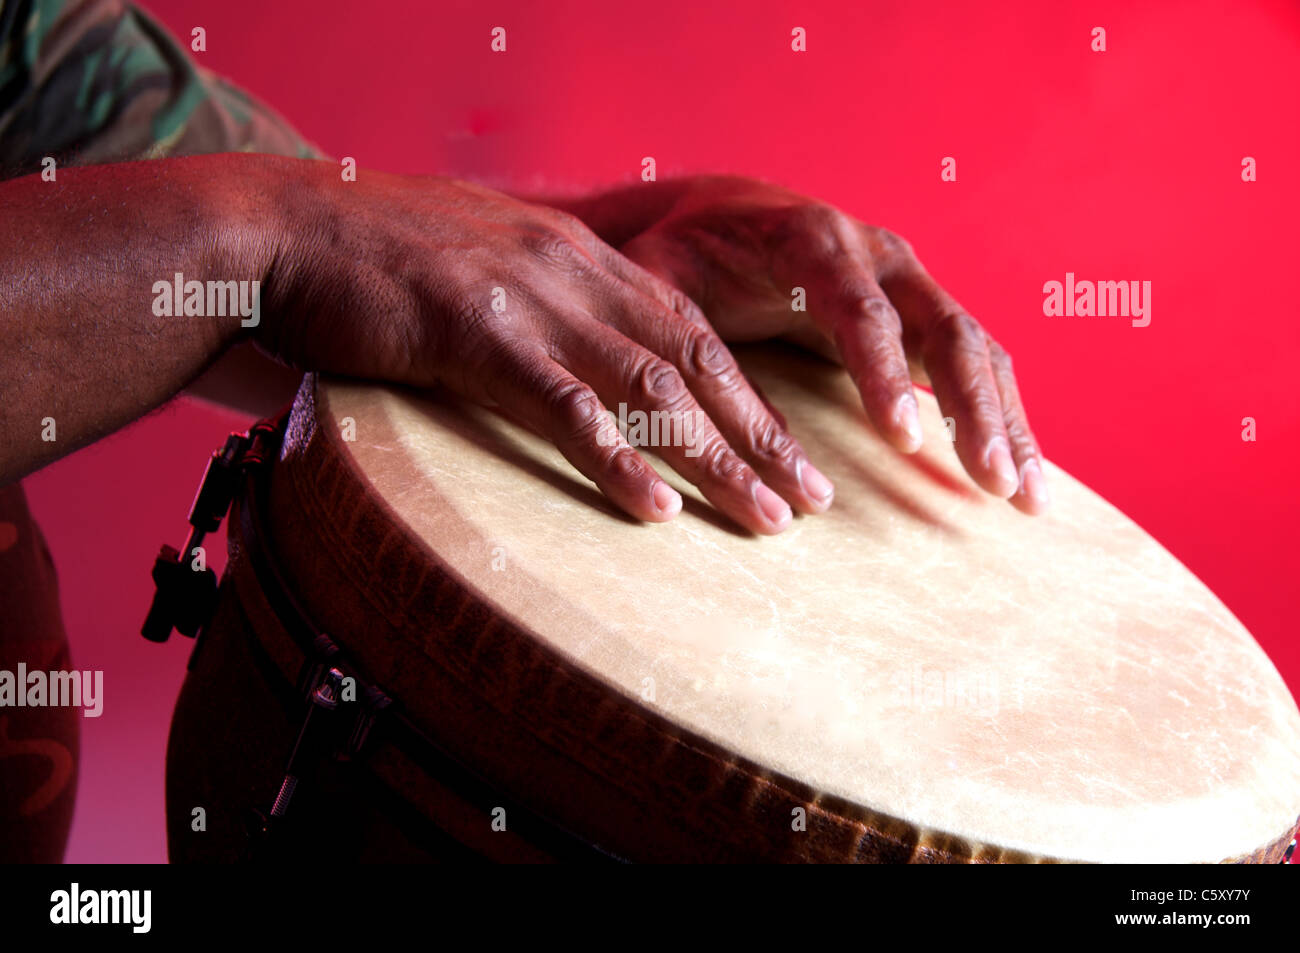 Un Africain ou d'Amérique latine Djembe joué contre un arrière-plan rouge dans le format horizontal. Banque D'Images